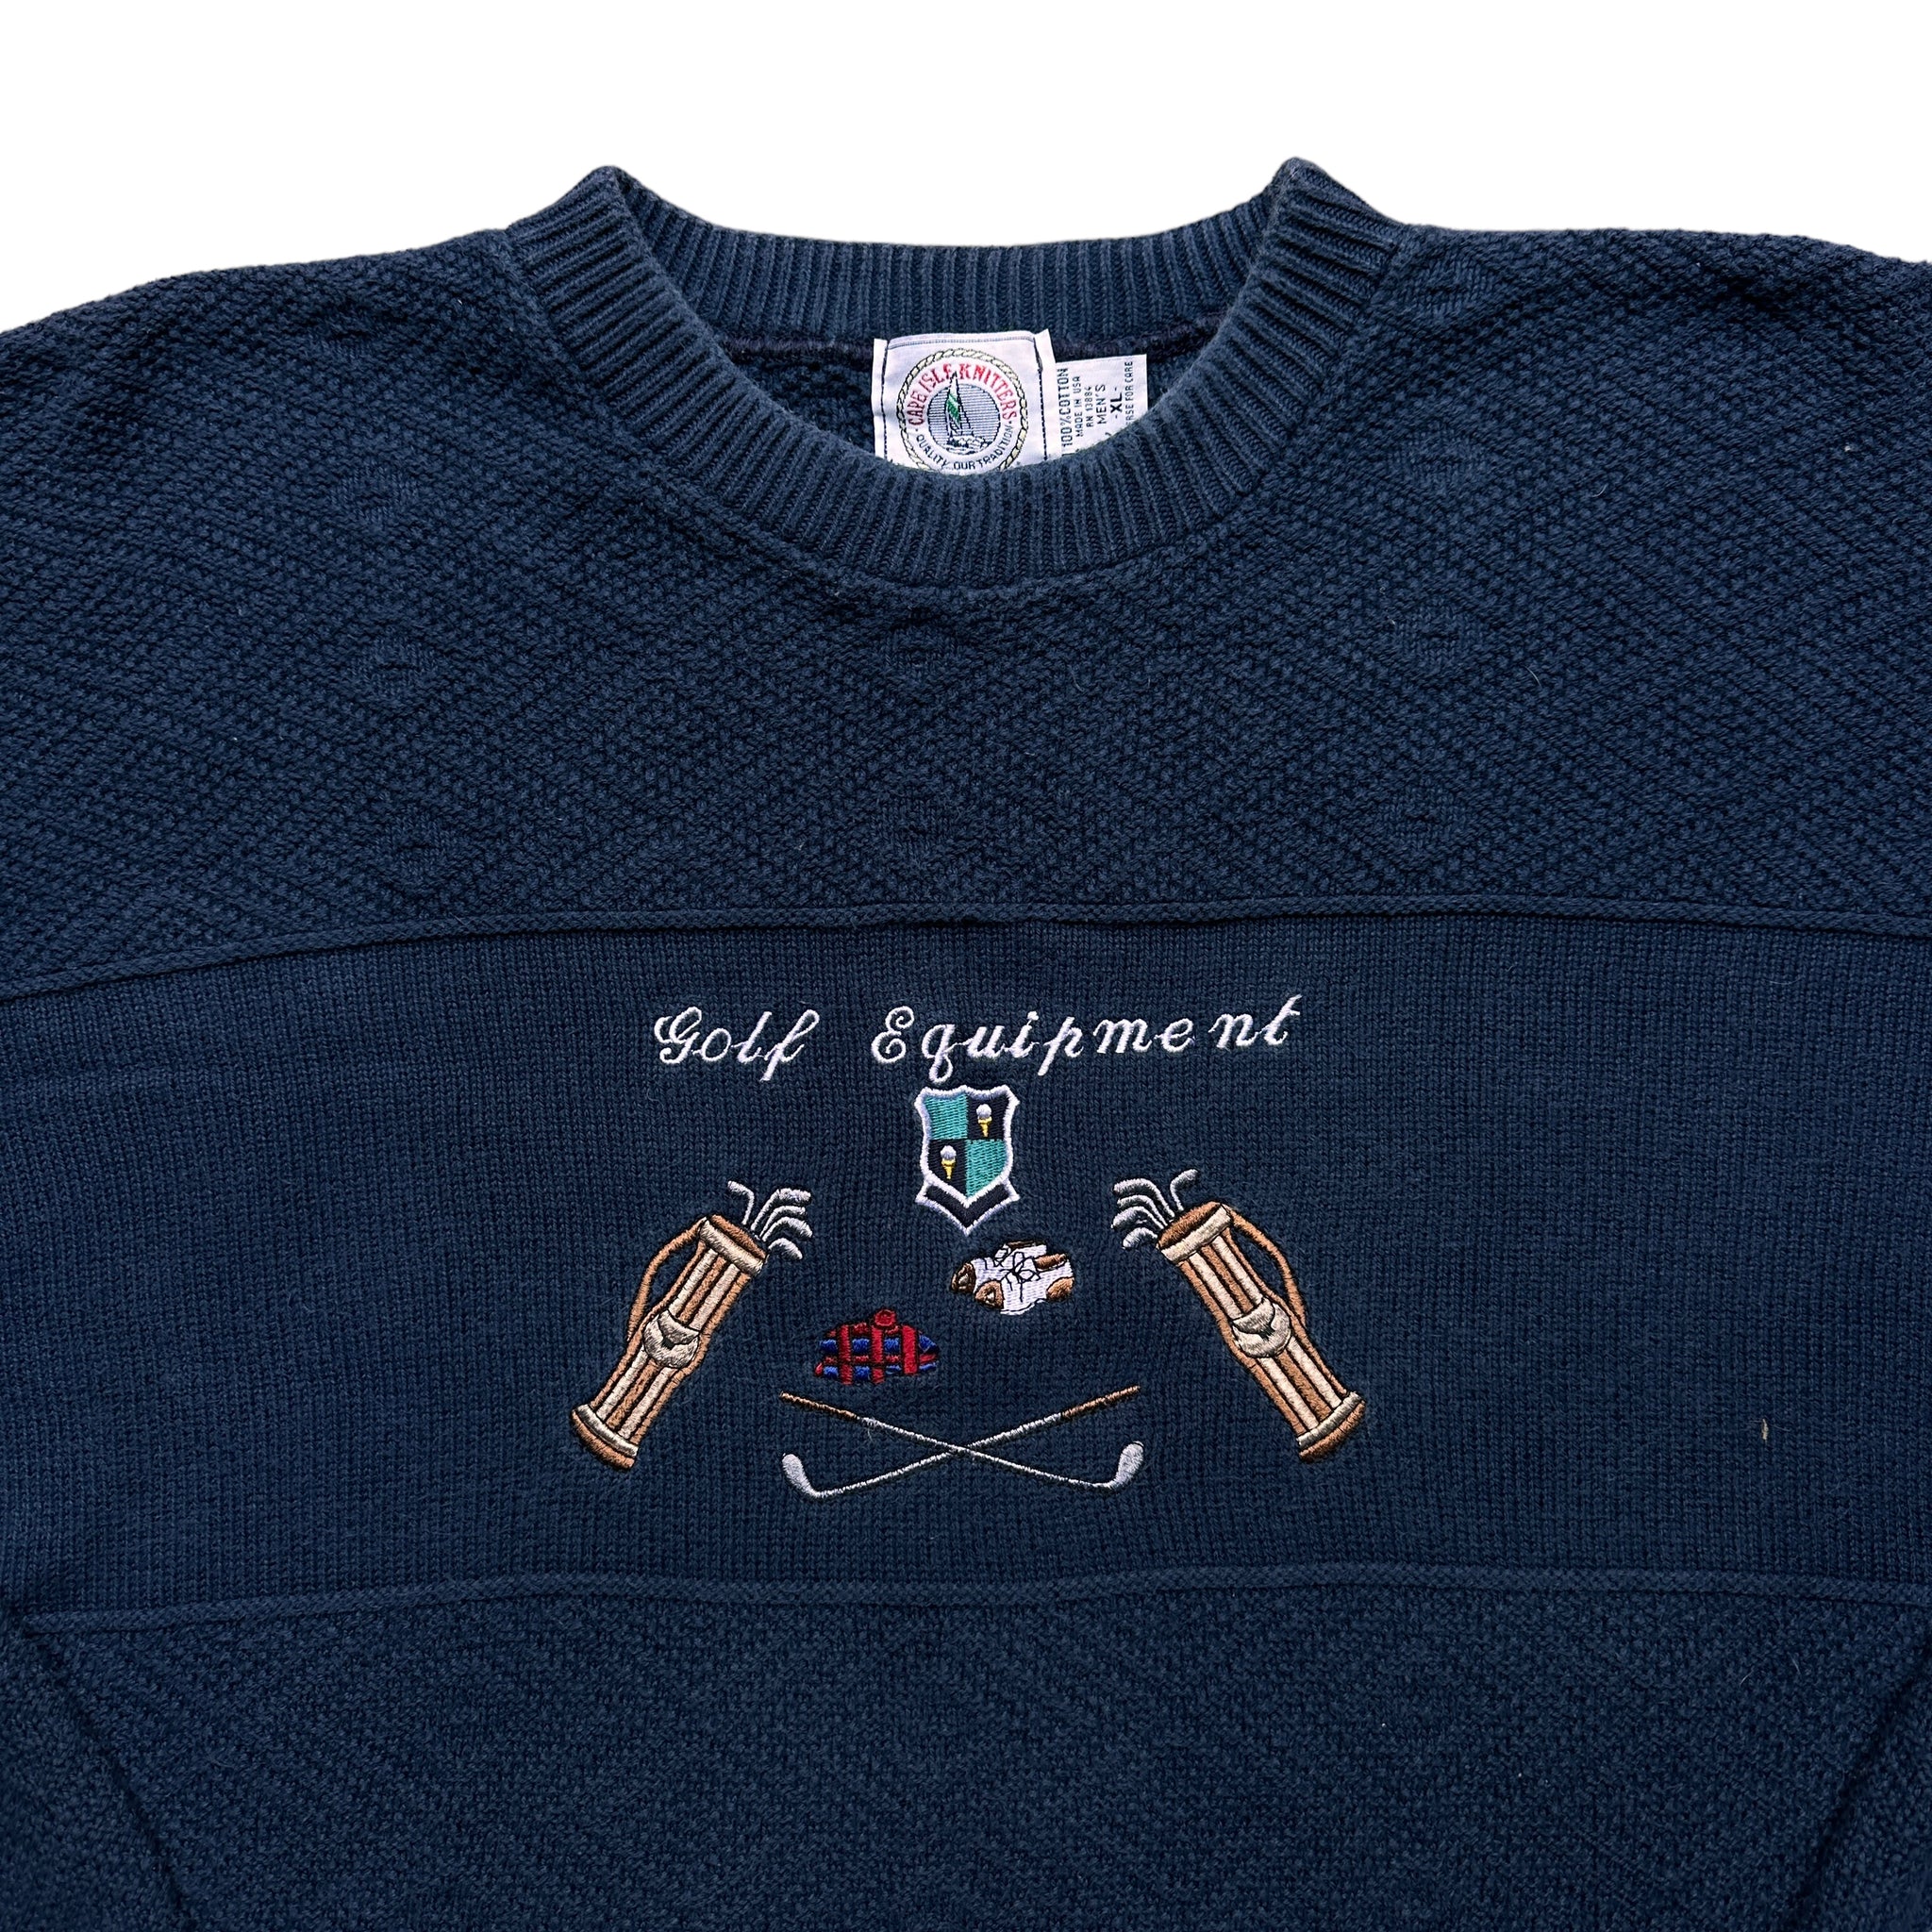 Golf equipment sweater XL